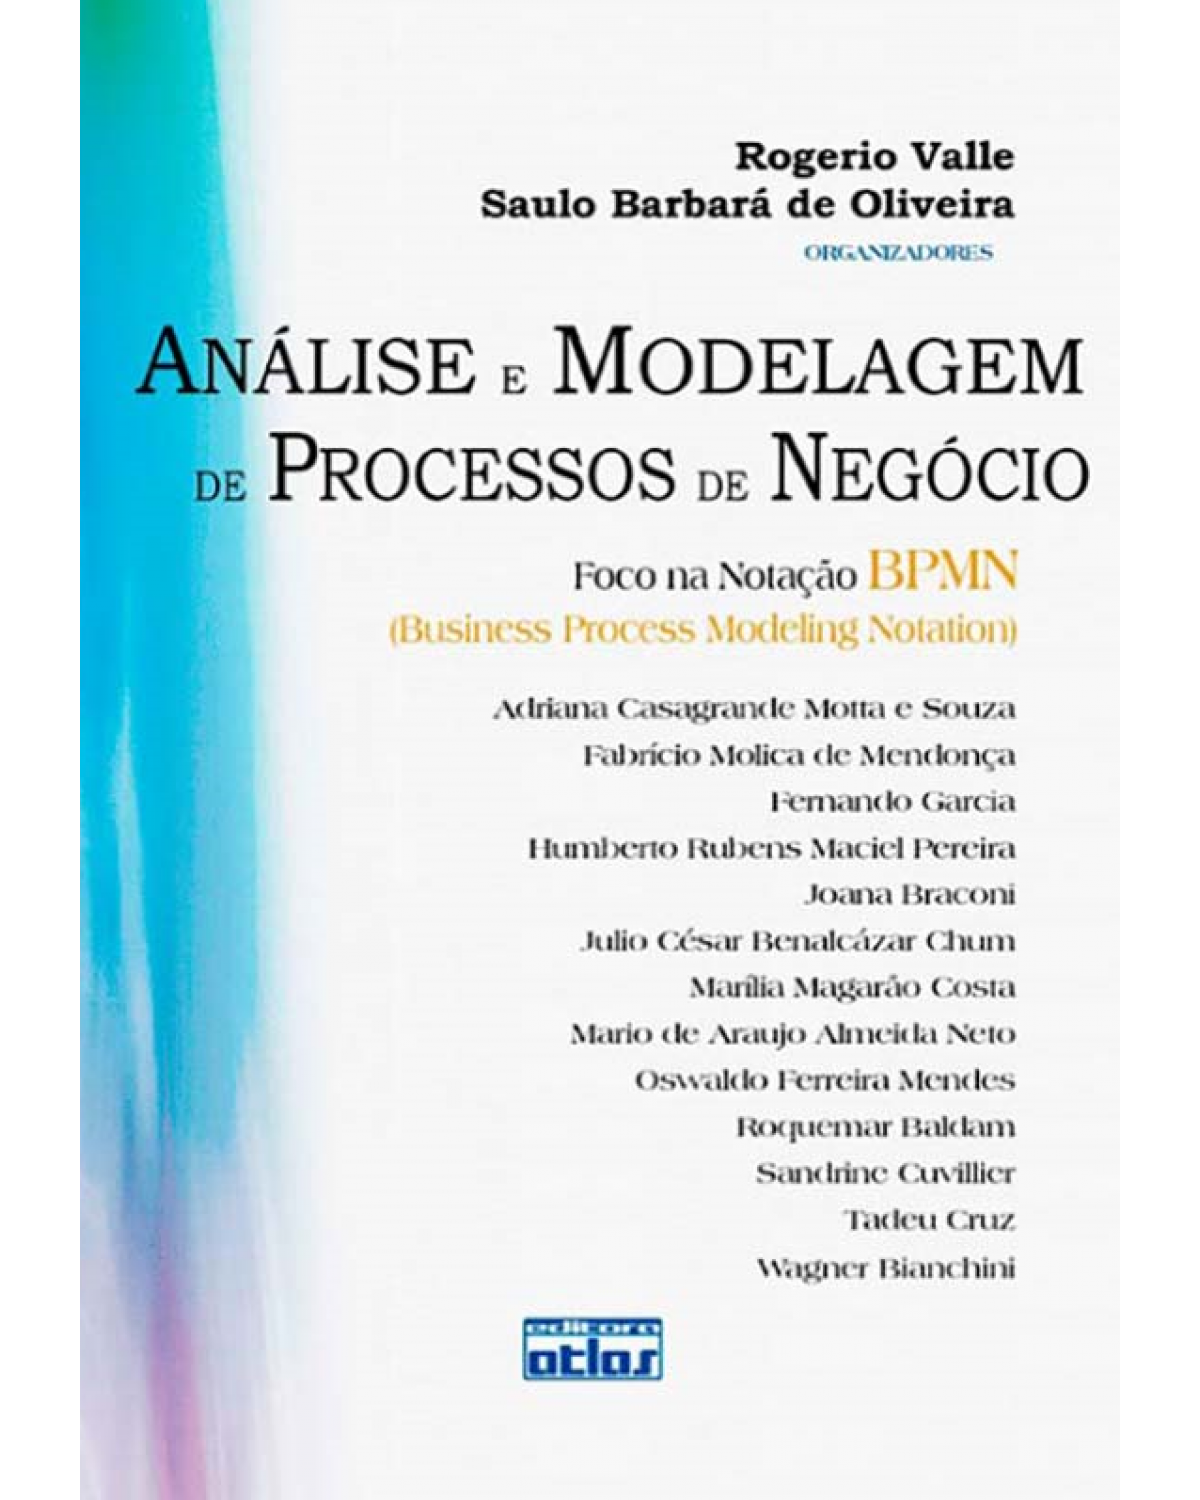 Análise e modelagem de processos de negócio - Foco na notação BPMN (Business Process Modeling Notation) - 1ª Edição | 2009